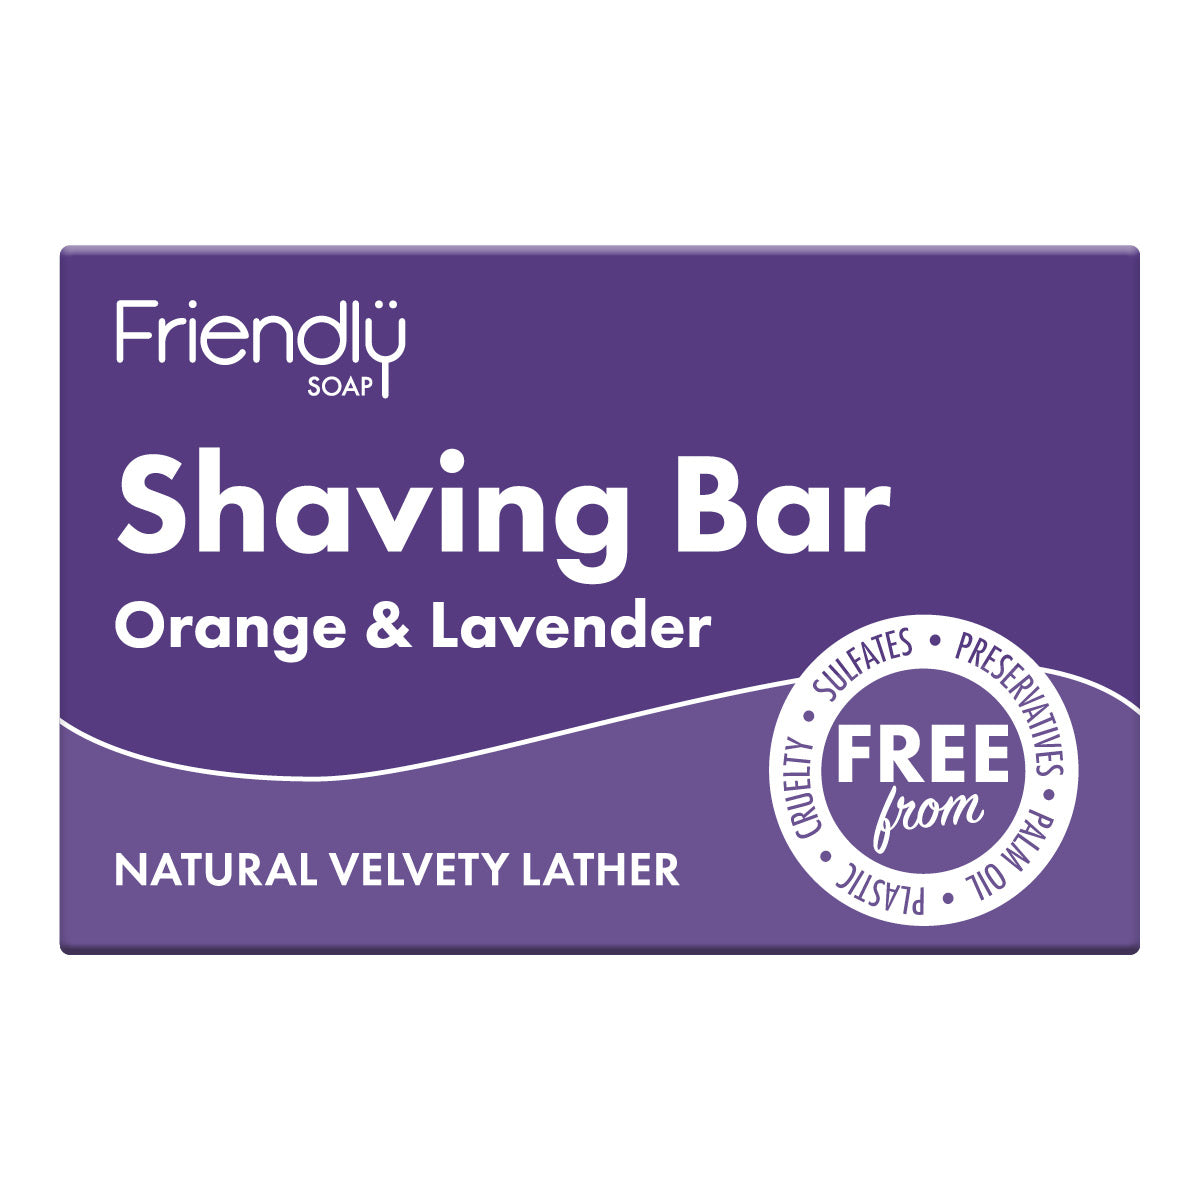 Shaving Bar - Orange & Lavender